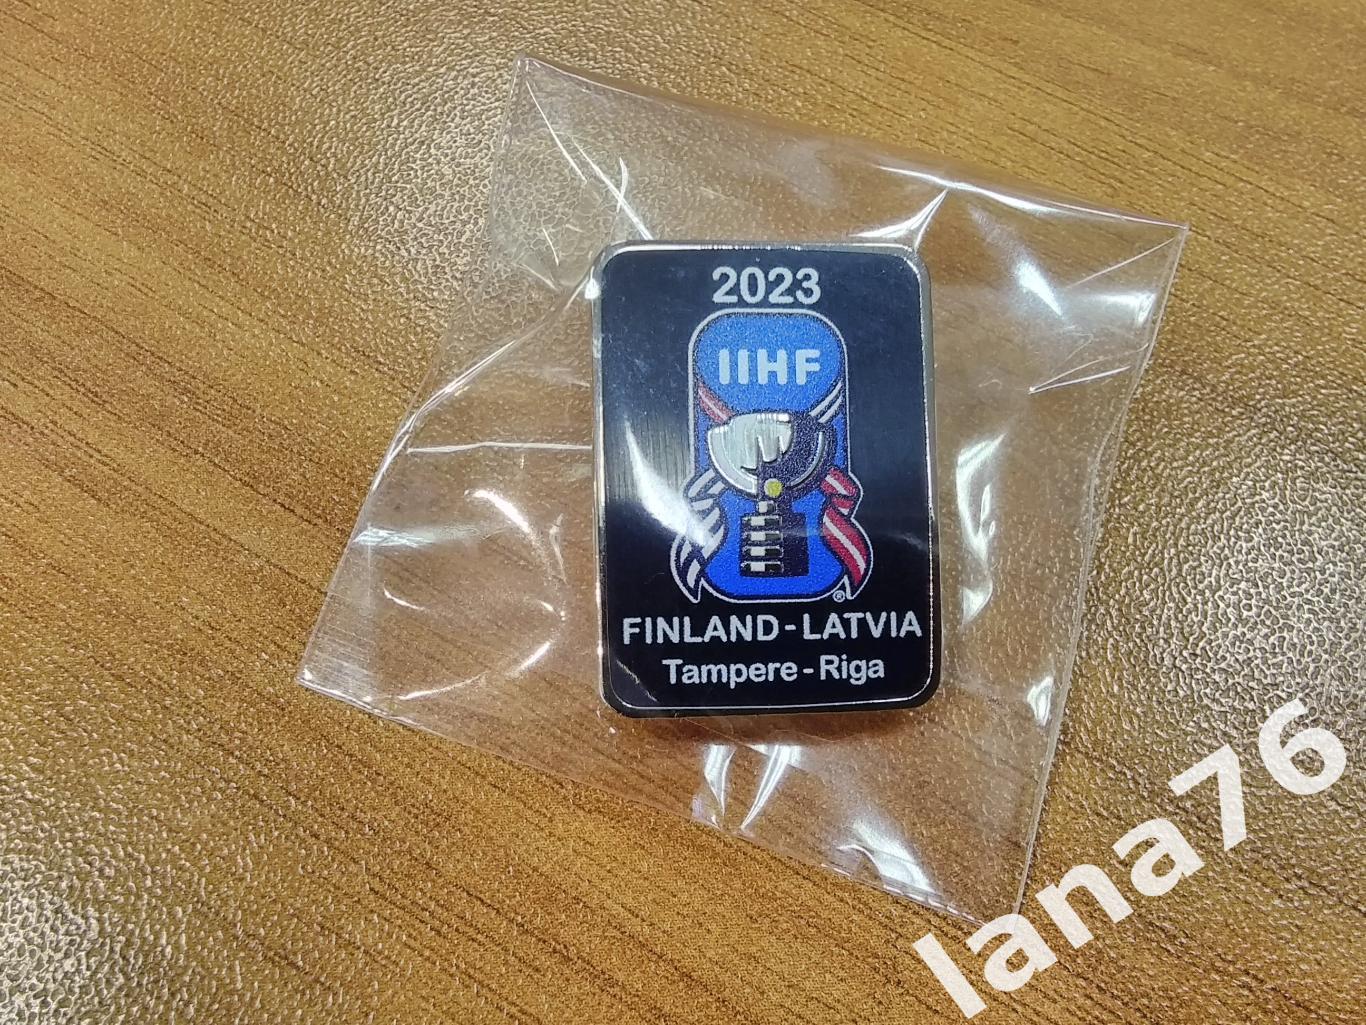 Чемпионат мира 2023 Финляндия - Латвия Тампере - Рига официальный значок ИИХФ